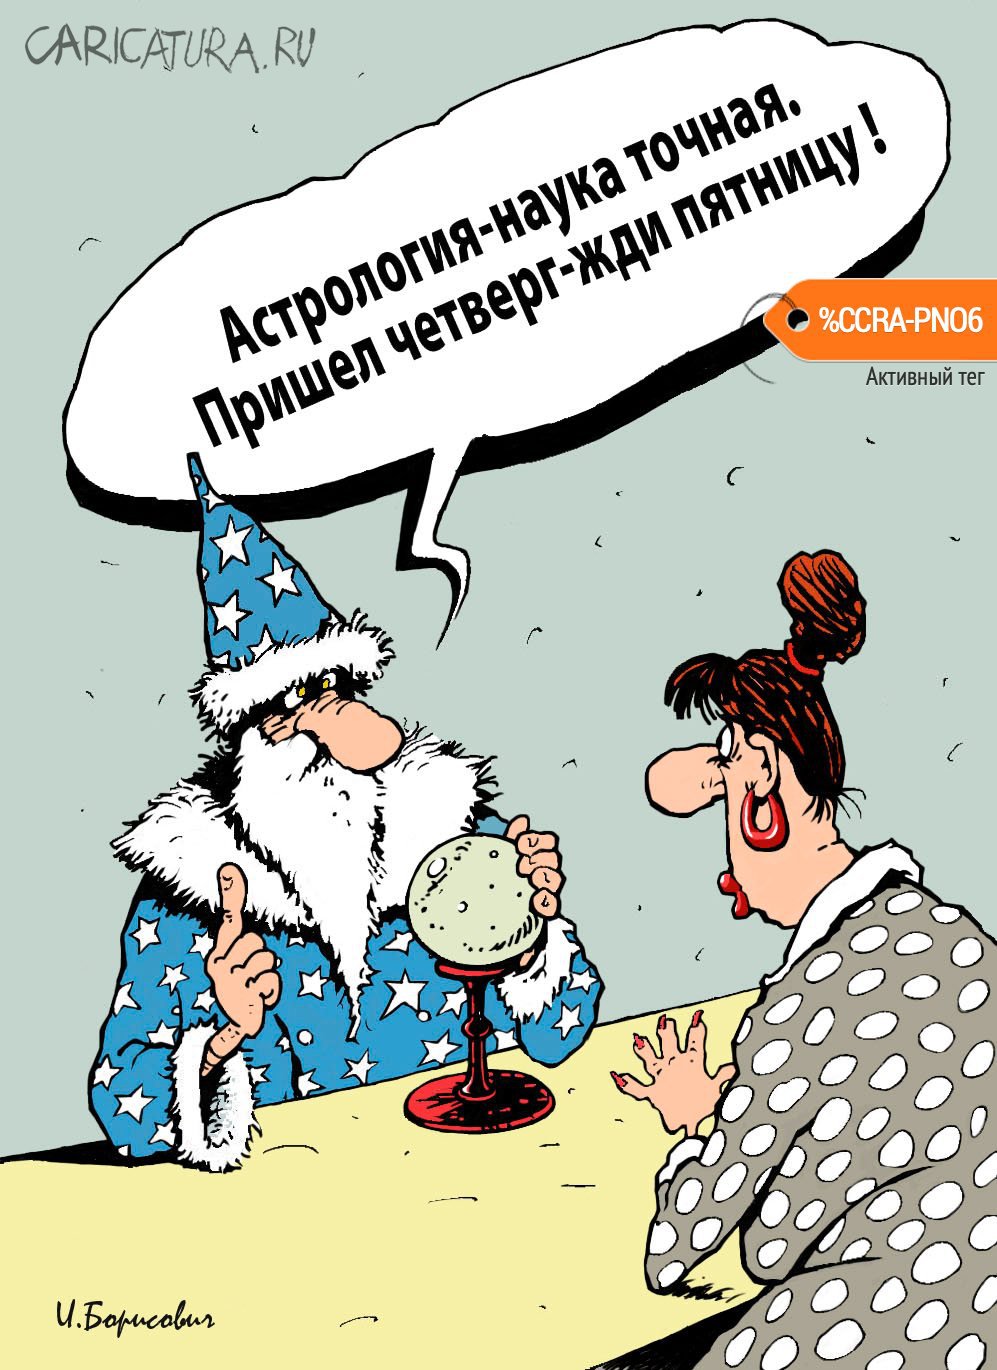 Карикатура "Четверг-пятница", Игорь Елистратов